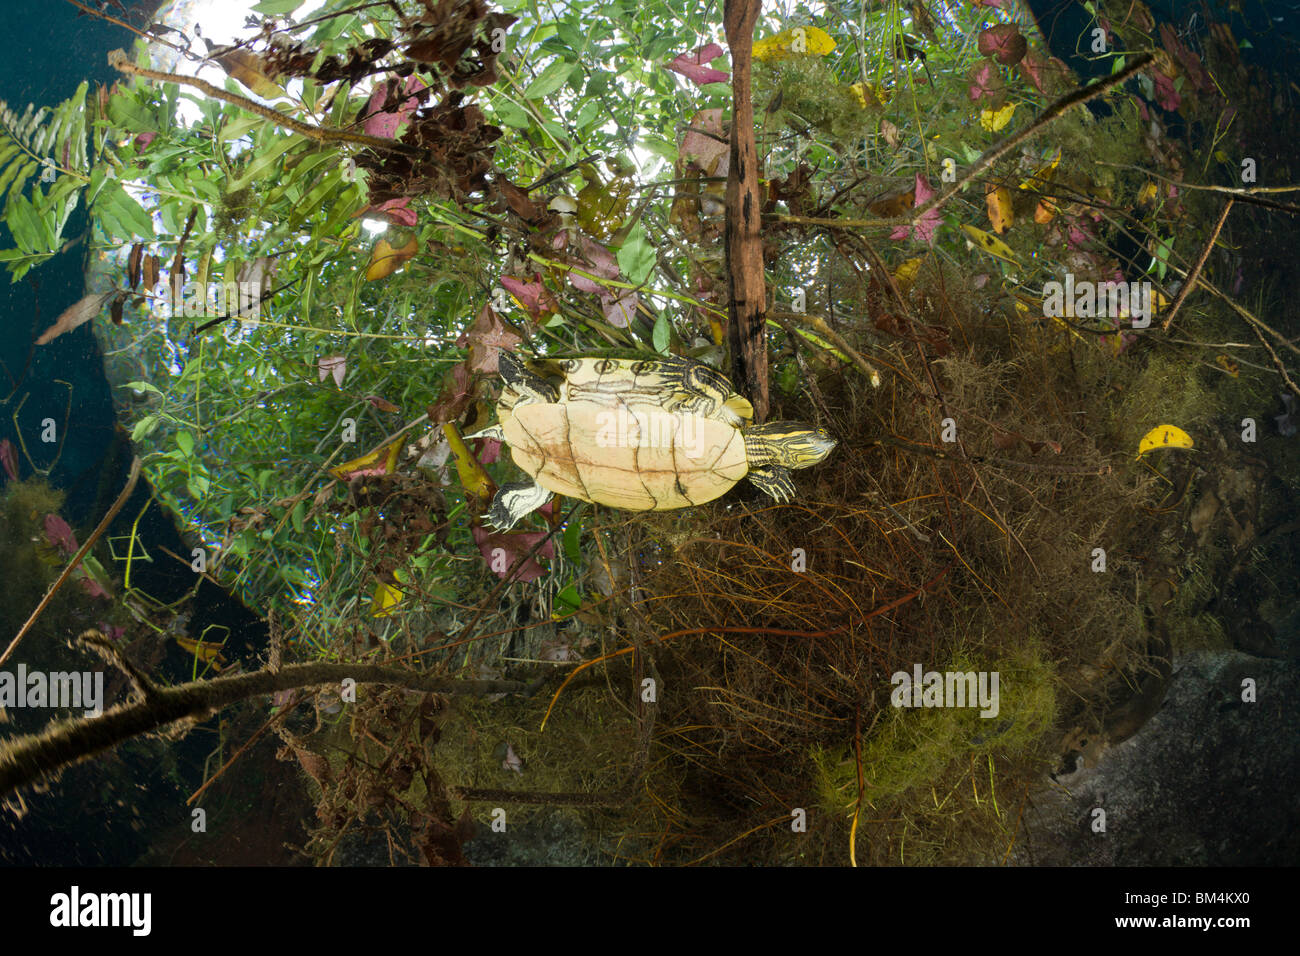 Mesoamerican Slider Turtle in Cenote, Trachemys scripta venusta, Tulum, Yucatan Peninsula, Mexico Stock Photo